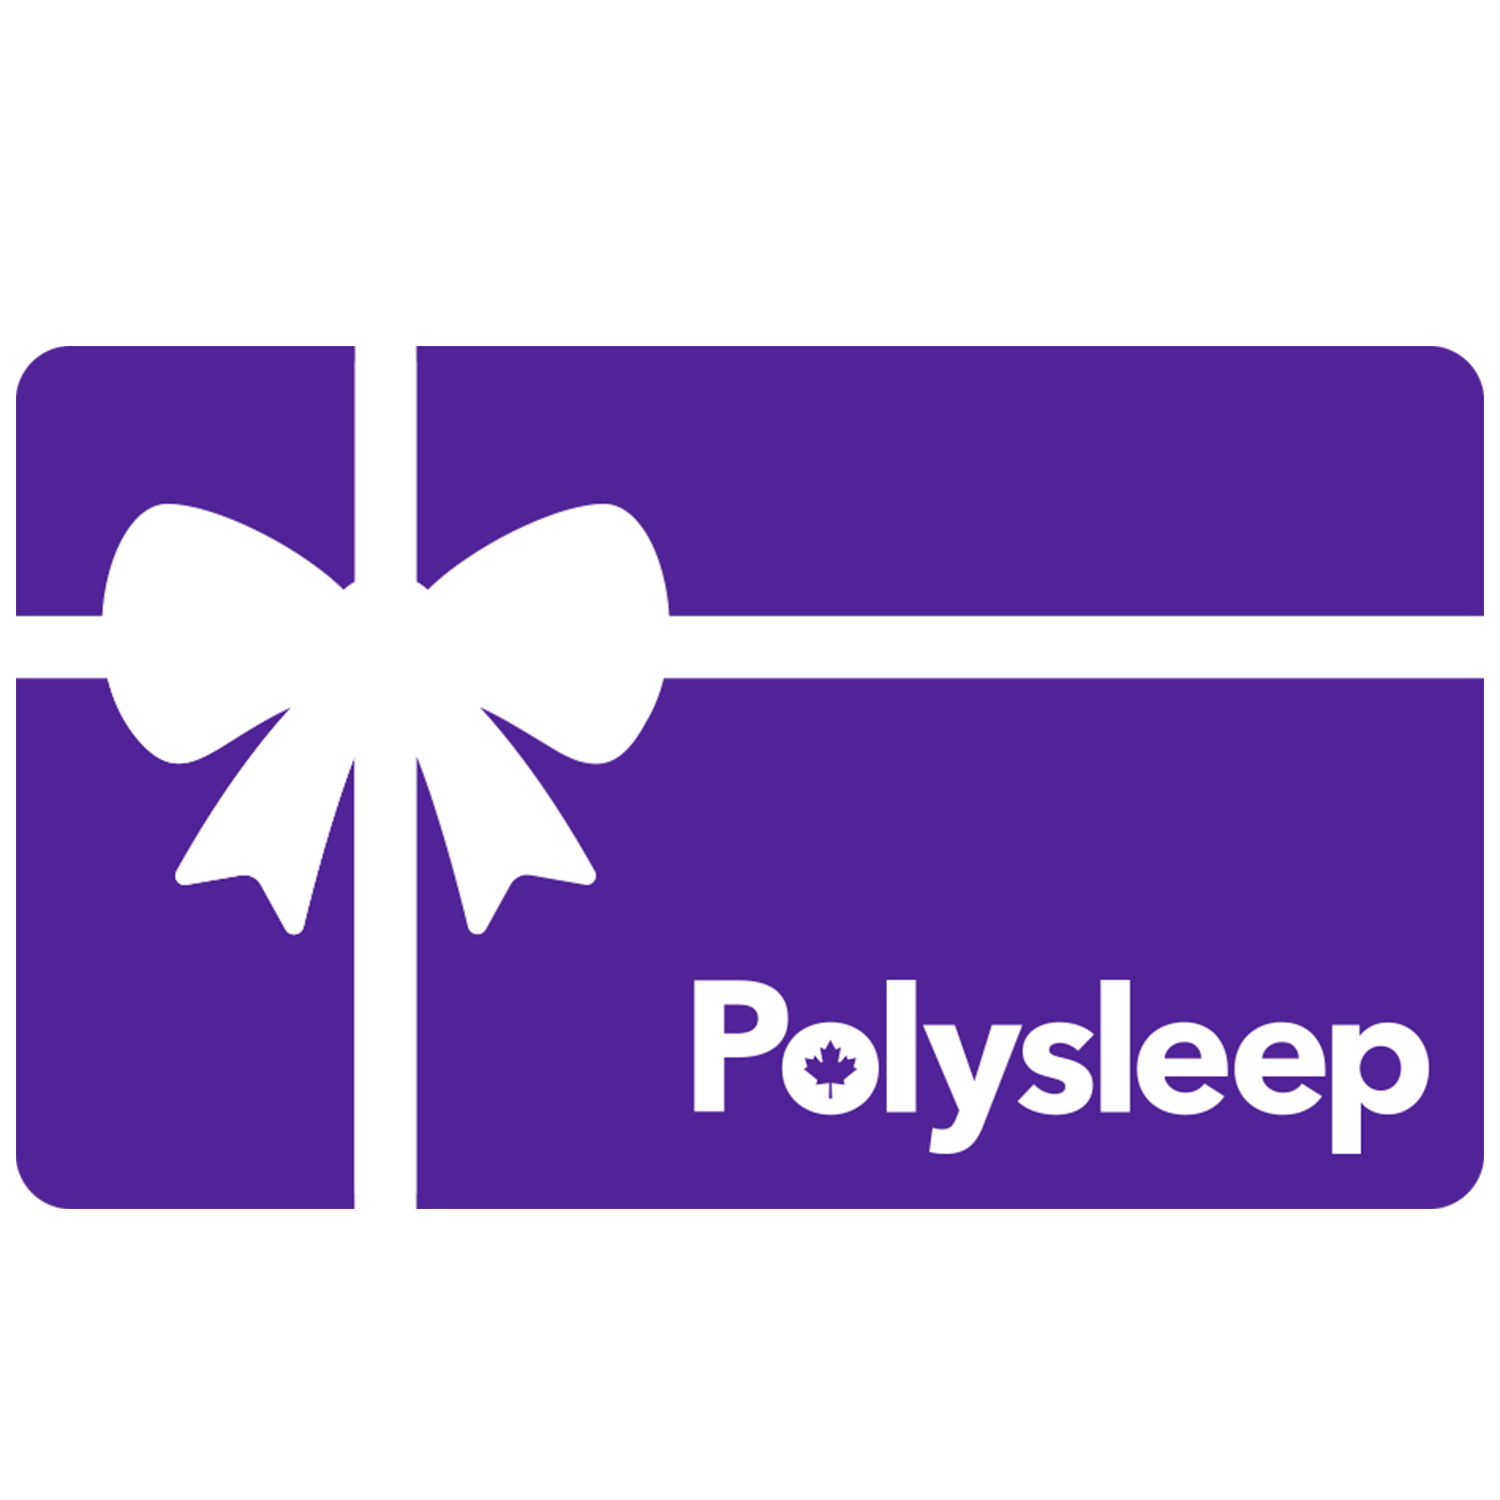 Polysleep Gift Card